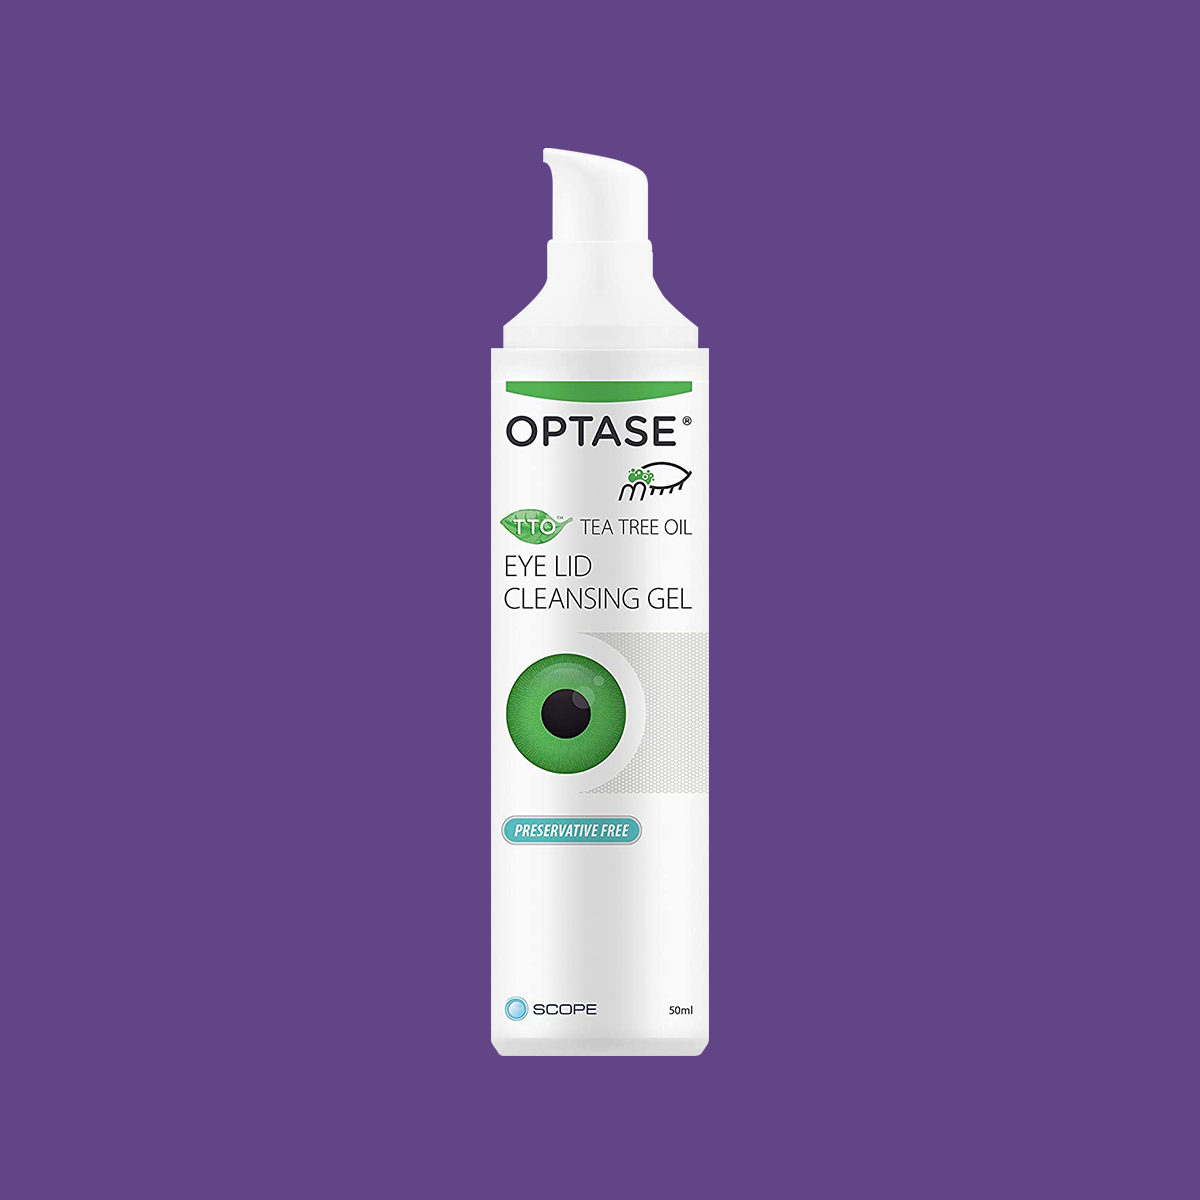 Optase Tea Tree Oil Eye Lid Cleansing Gel